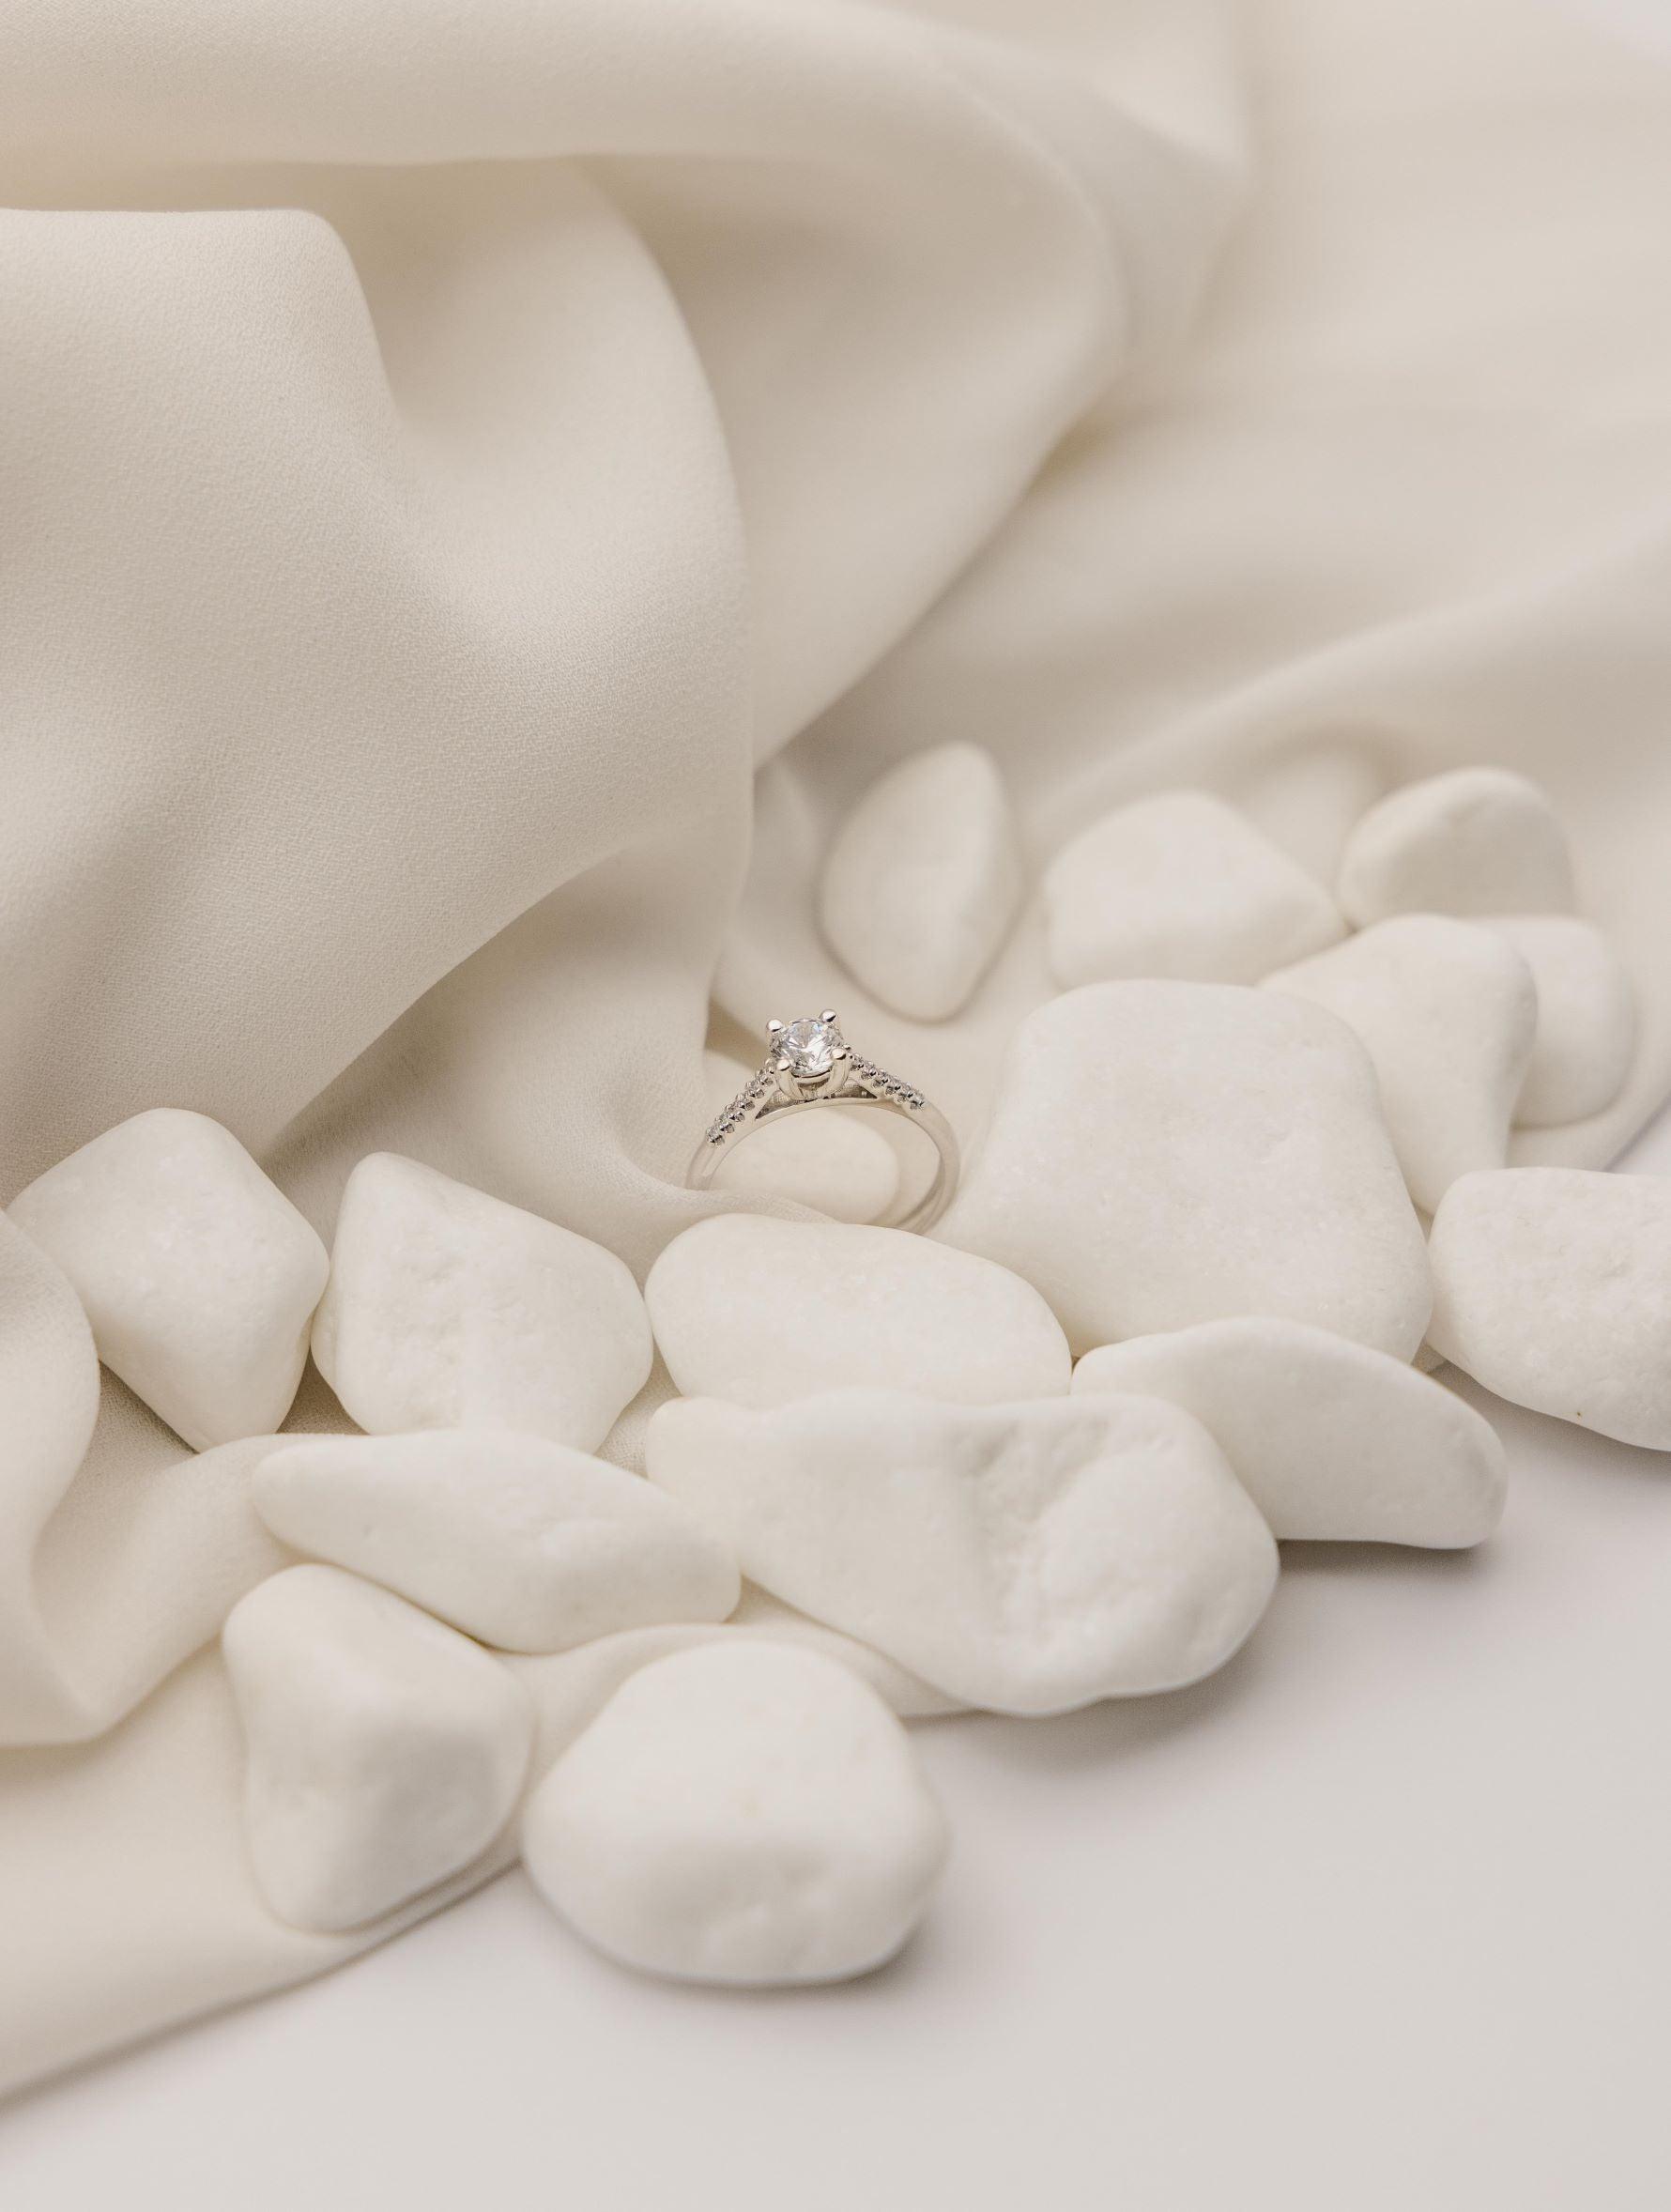 Λευκόχρυσο μονόπετρο δαχτυλίδι με διαμάντι και πλαίνές πέτρες από μικρότερα διαμάντια, επάνω σε λευκά βότσαλα.